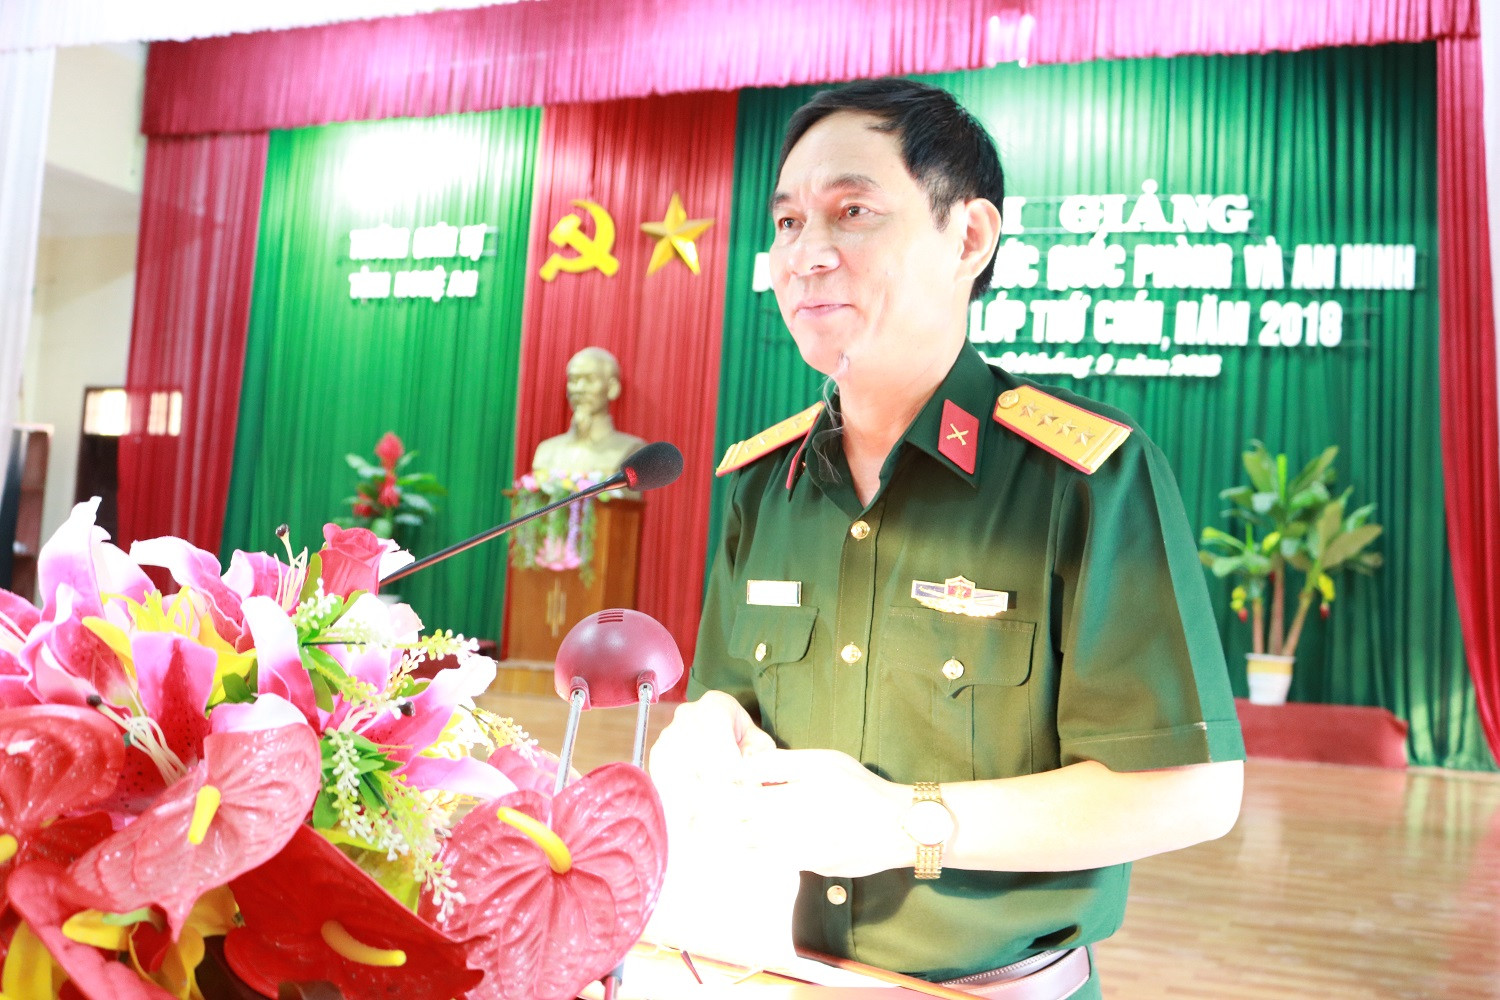 Đại tá Trần Văn Hùng - Ủy viên Ban thường vụ Tỉnh ủy, Chỉ huy trưởng Bộ CHQS tỉnh phát biểu giao nhiệm vụ tại lớp bồi dưỡng. Ảnh: Văn Nhật